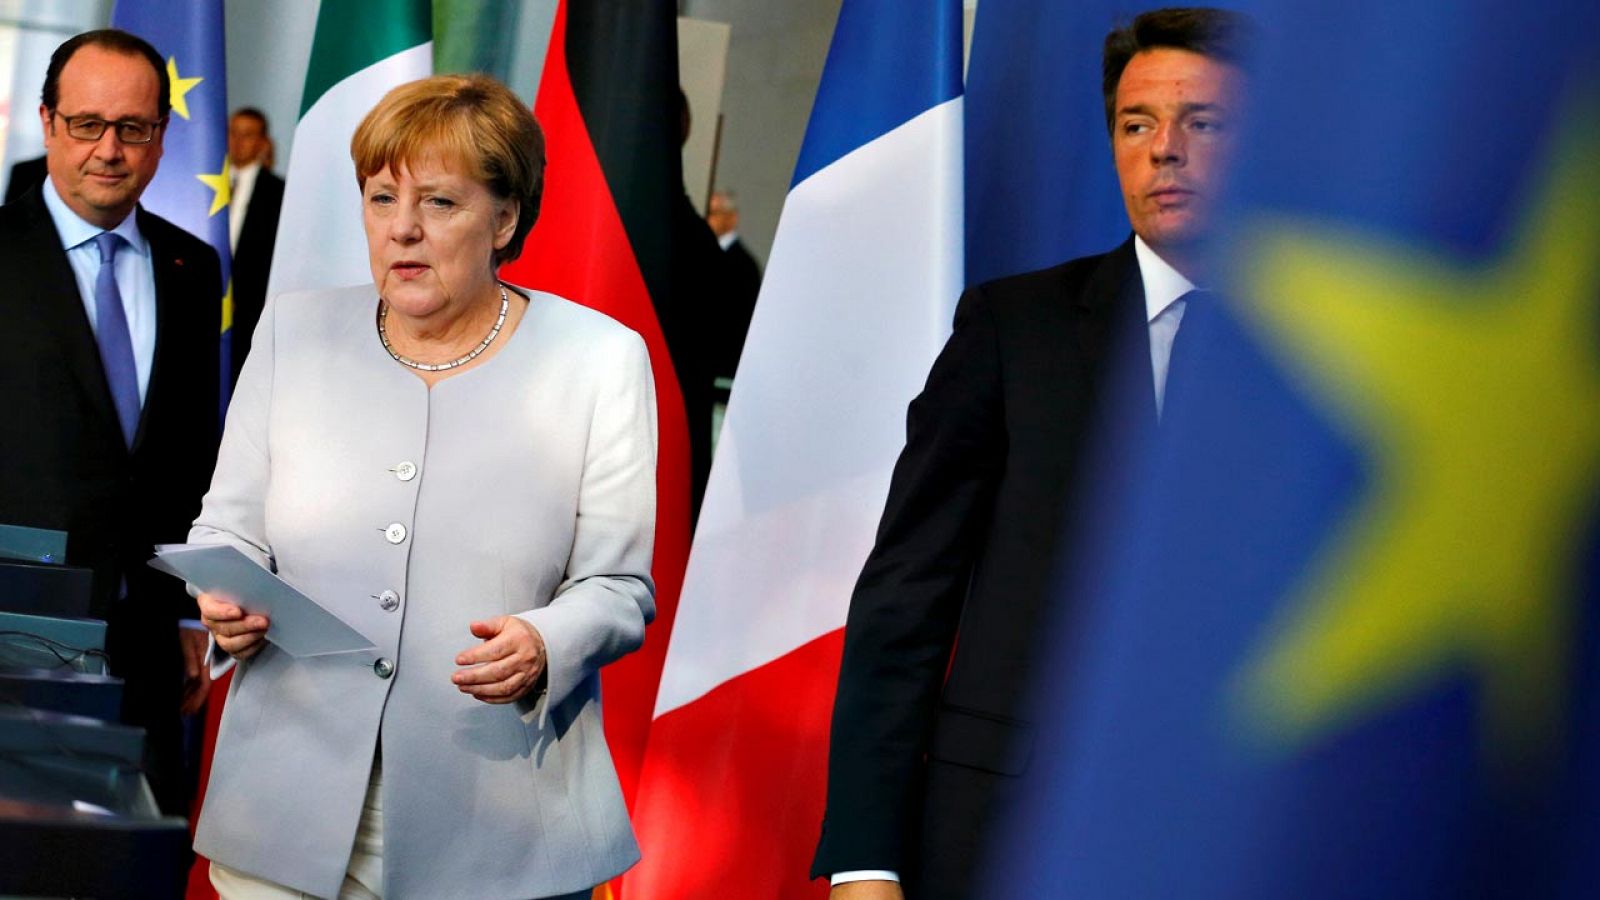 El presidente de Francia, François Hollande, la canciller alemana, Angela Merkel, y el primer ministro italiano, Matteo Renzi